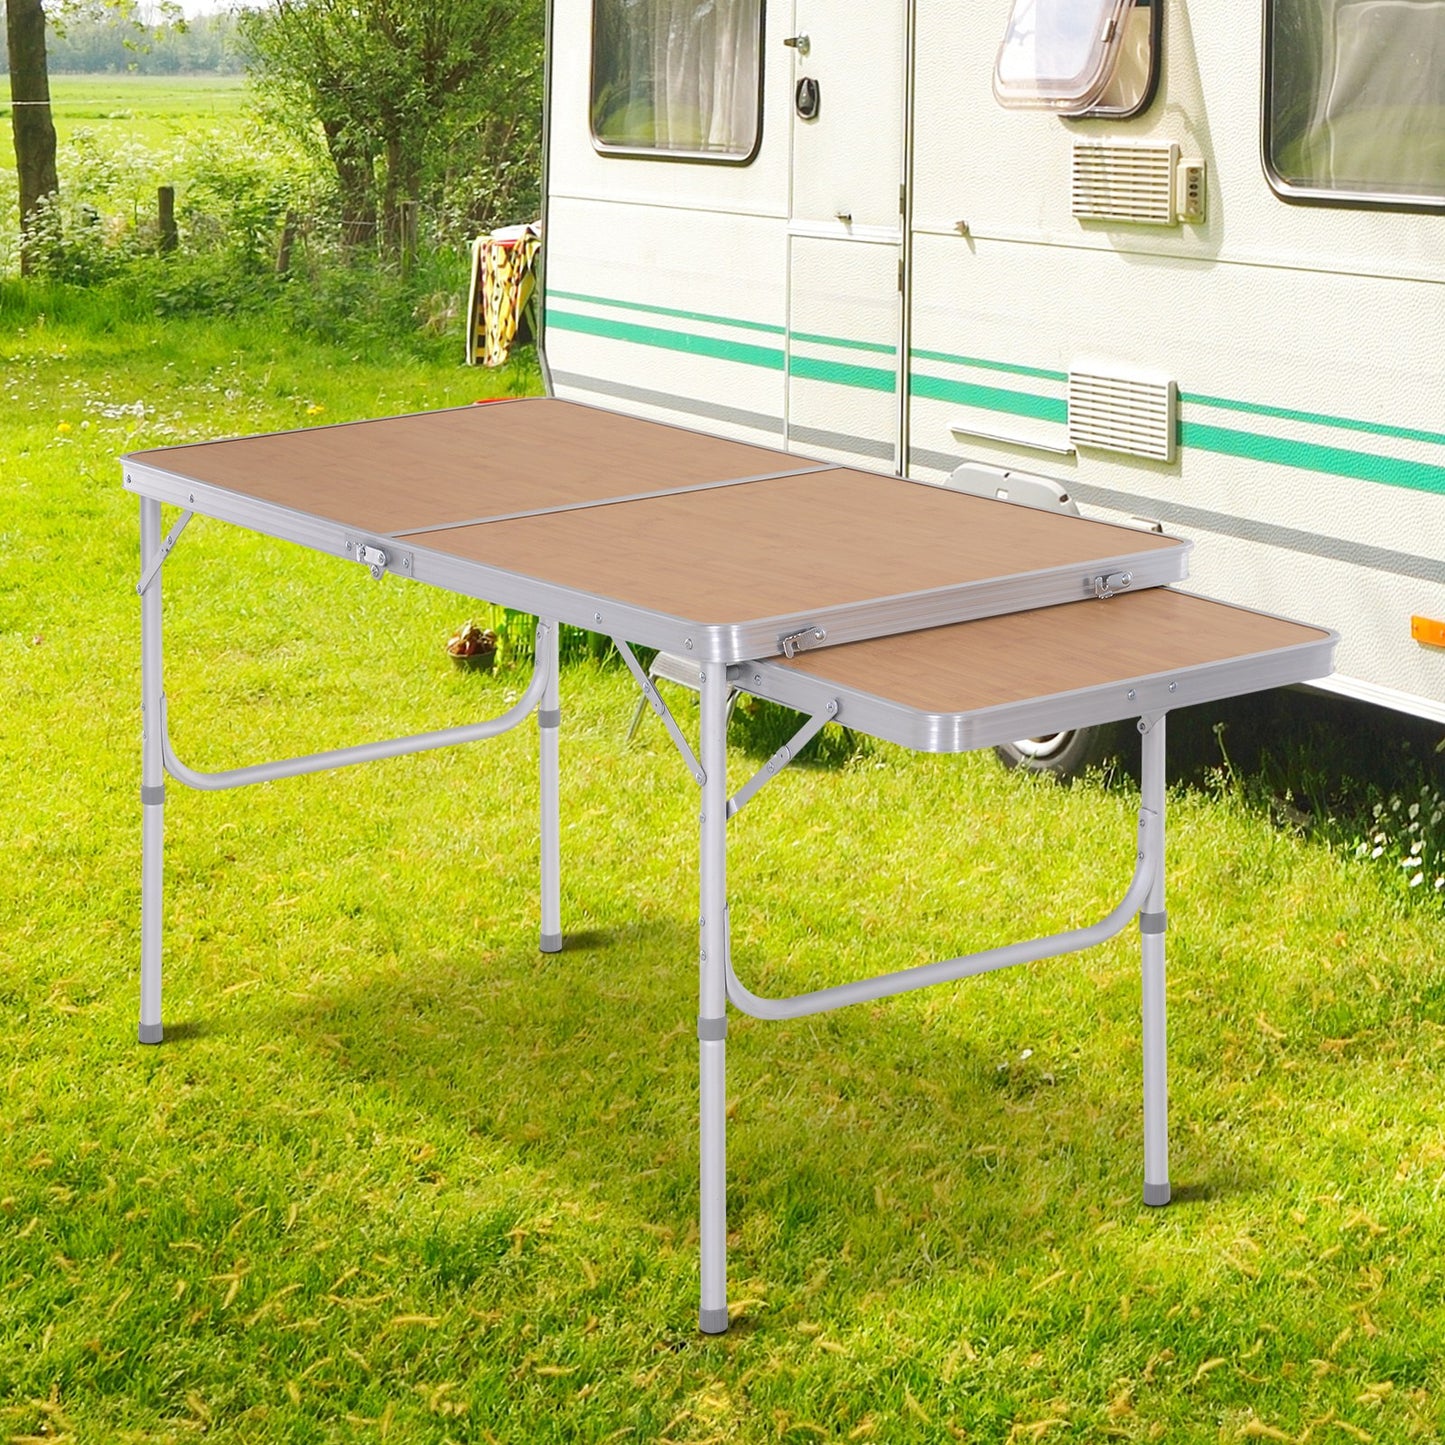 Outsunny Aluminium MDF-Top 4ft Folding Portable Outdoor Table Silver